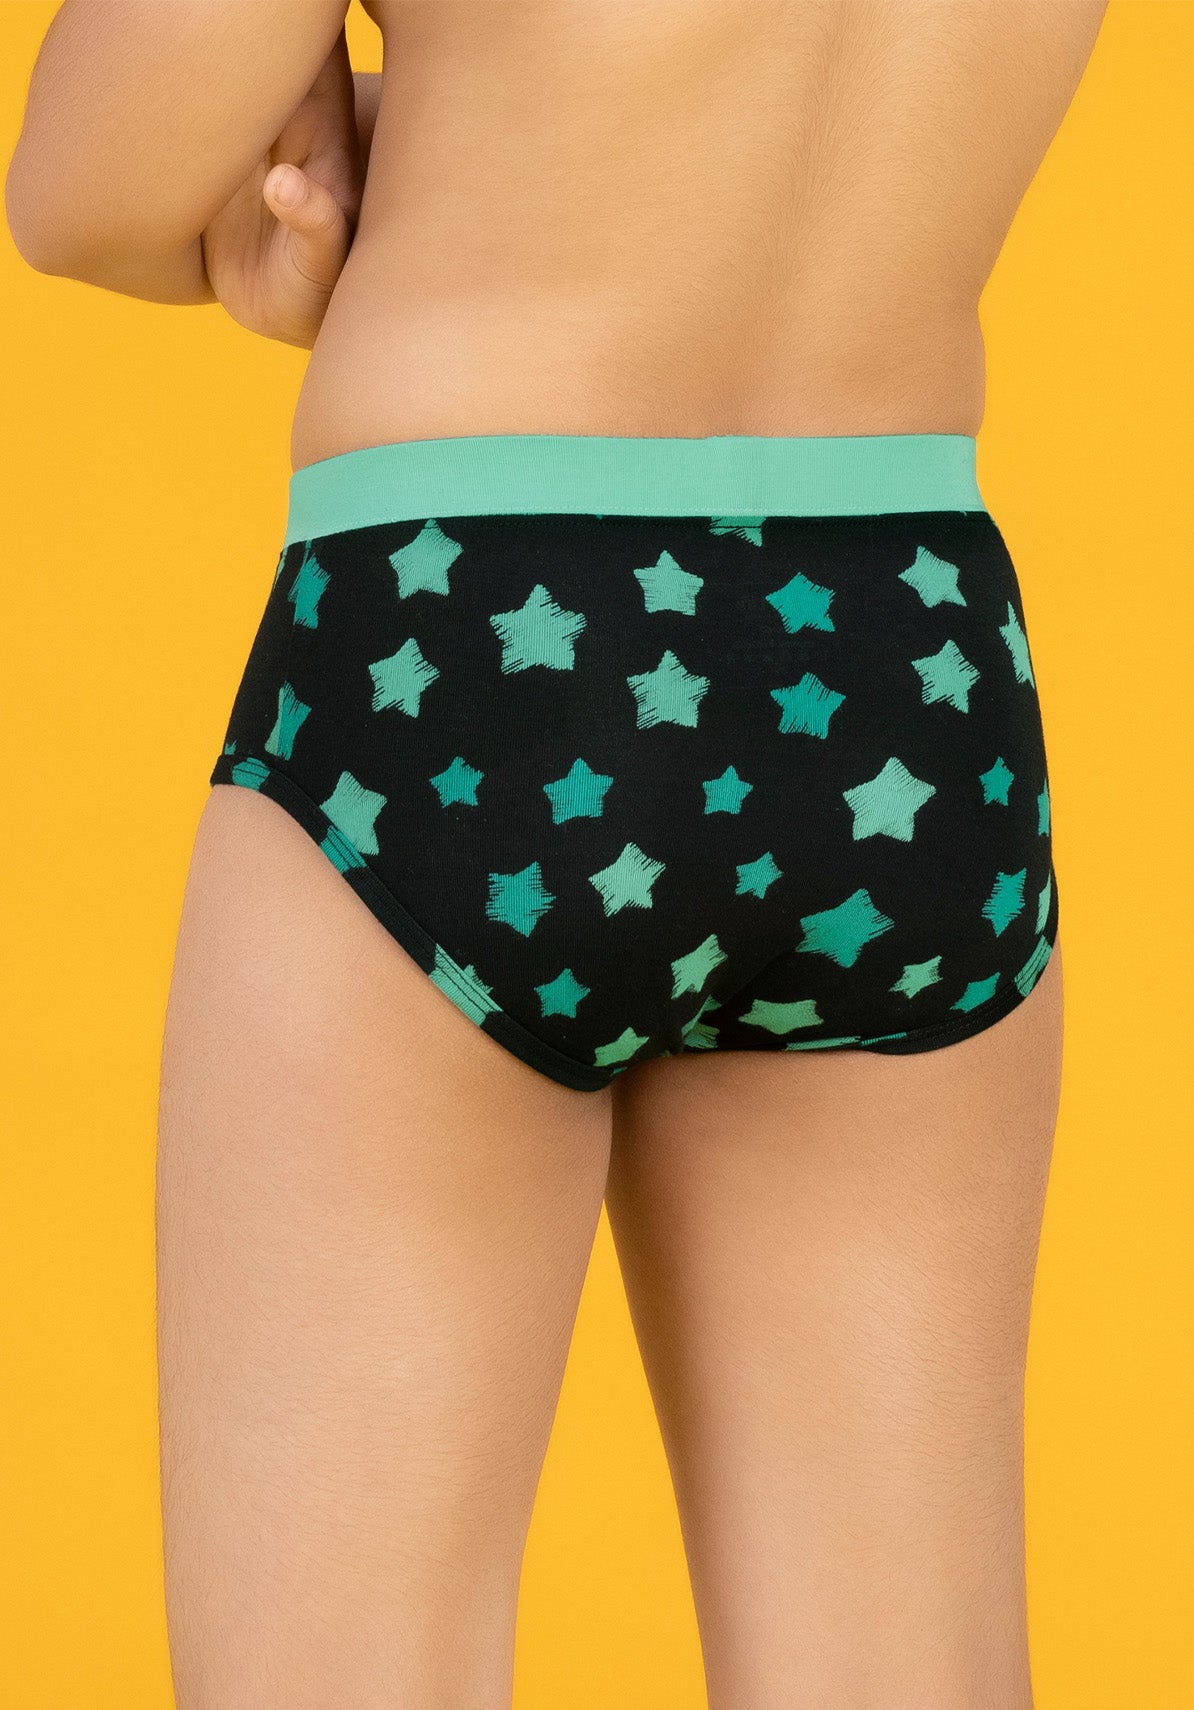 Astro Boys Briefs Green Tencel Modal - Starry